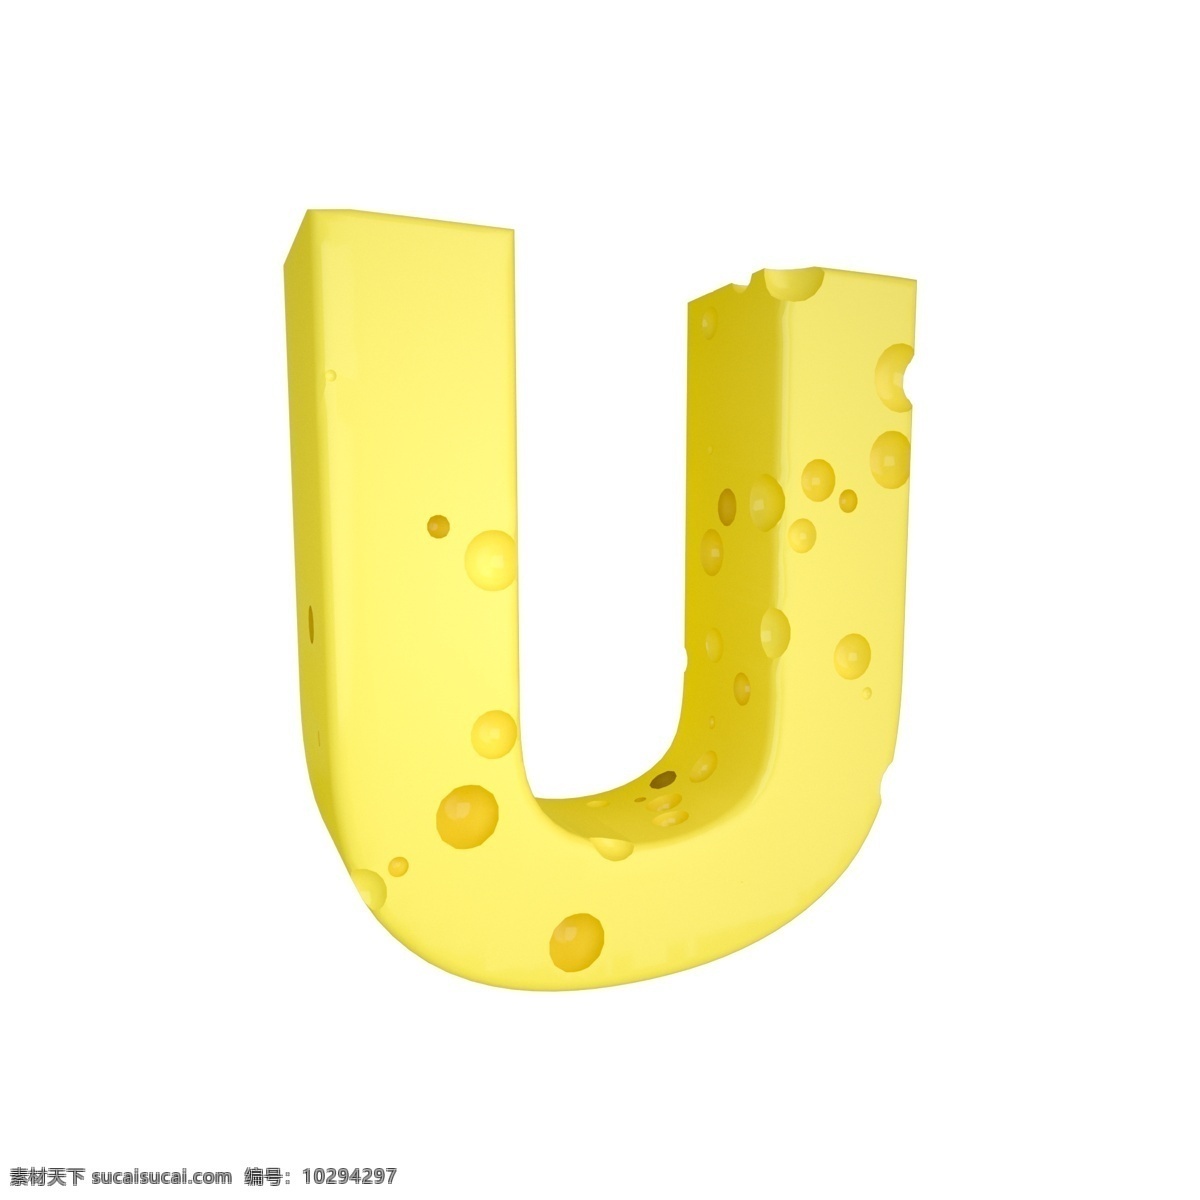 c4d 创意 奶酪 字母 u 装饰 3d 黄色 立体 食物 平面海报配图 电商淘宝装饰 可爱 柔和 字母u